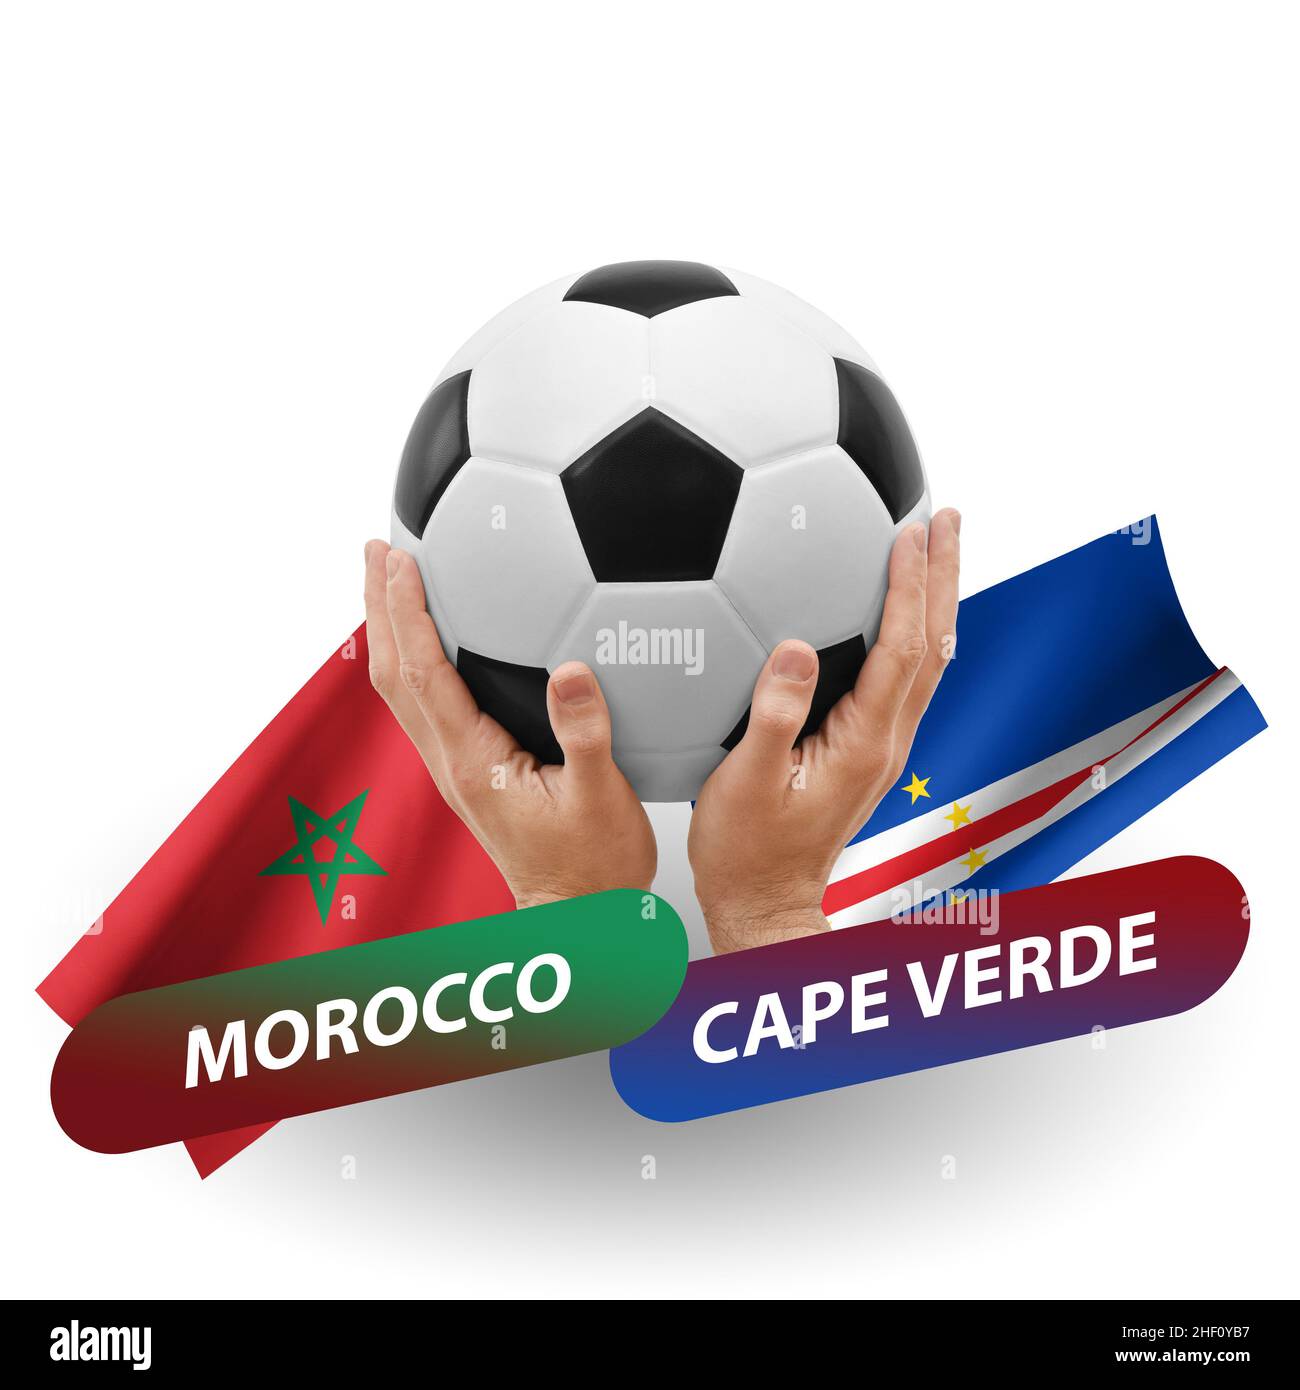 Marruecos - cabo verde